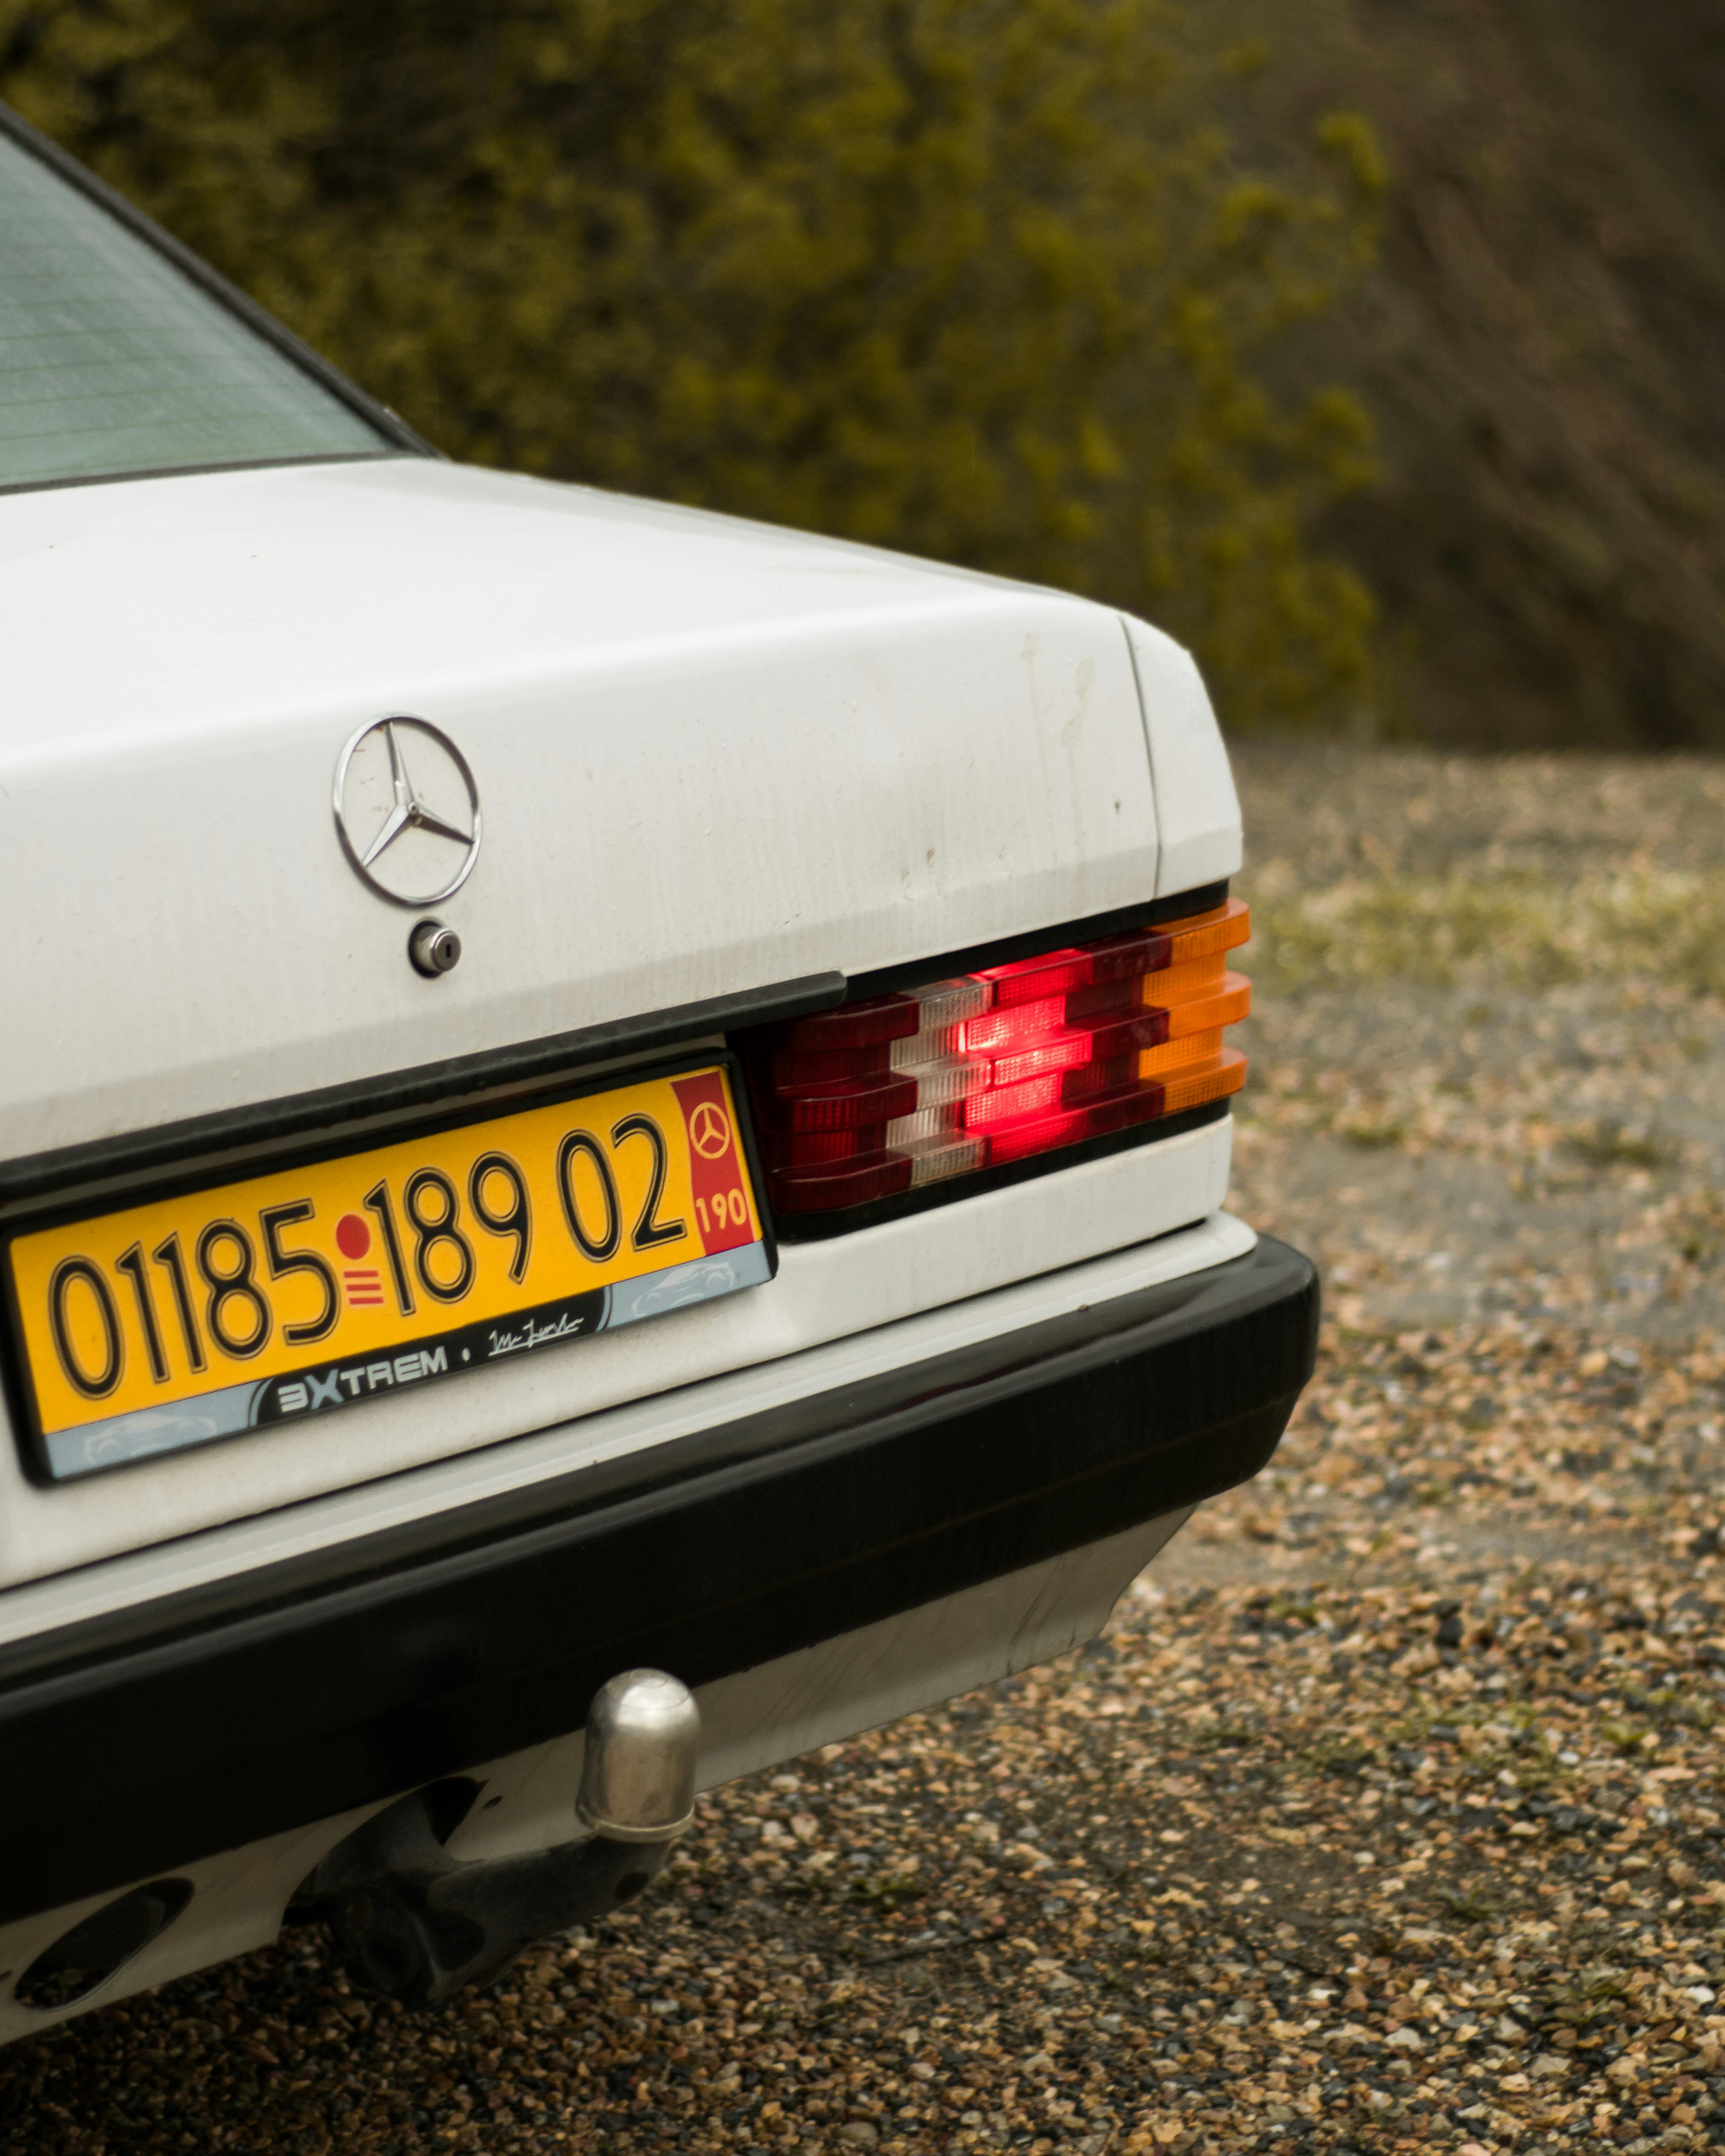 Mercedes Benz Logo · Free Stock Photo